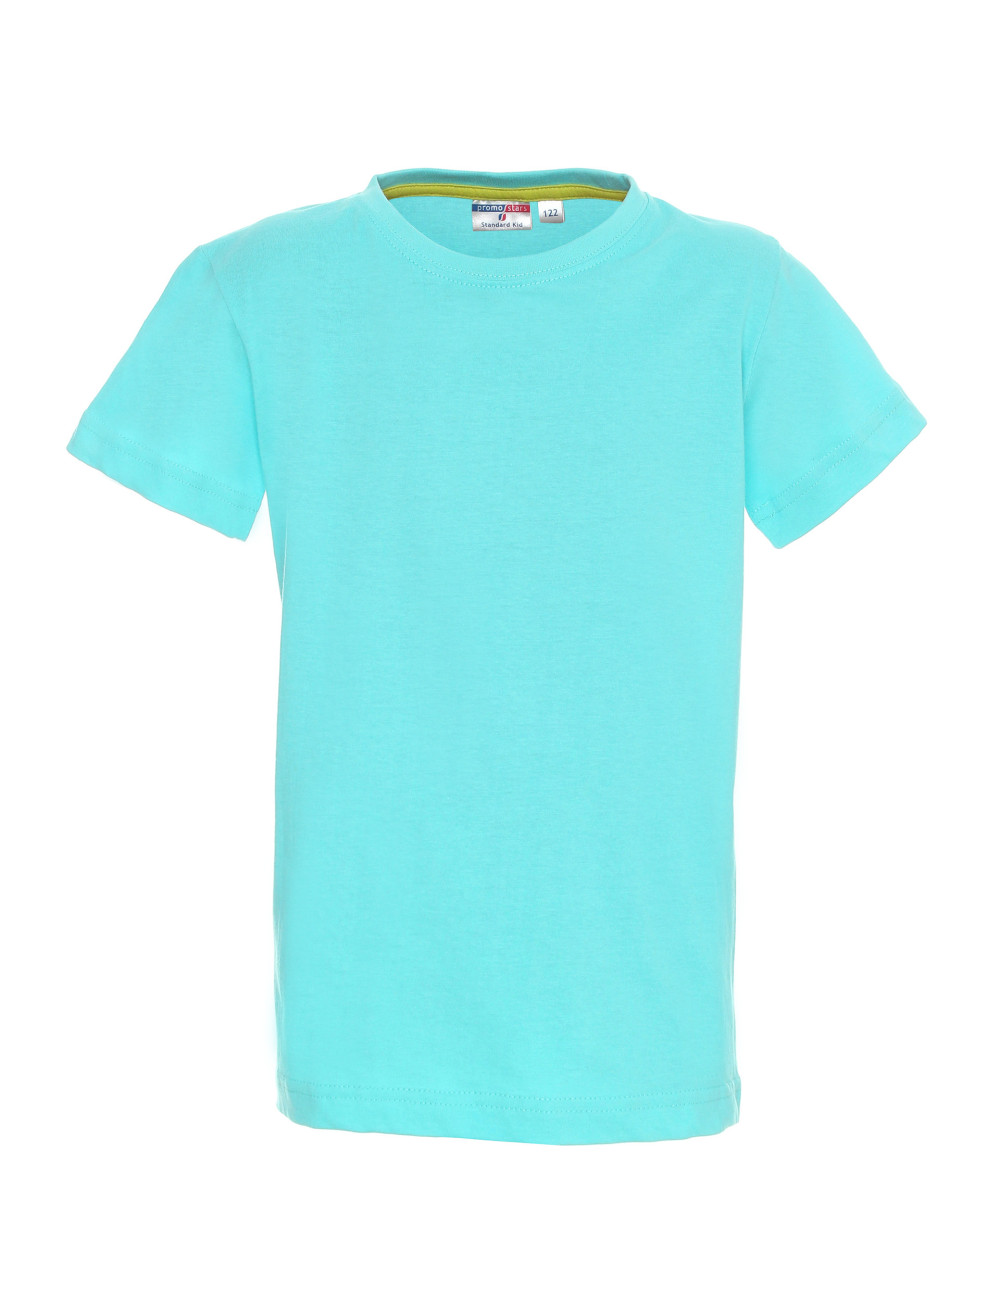 Kinder-T-Shirt Standard Kid 150 hellblau Promostars